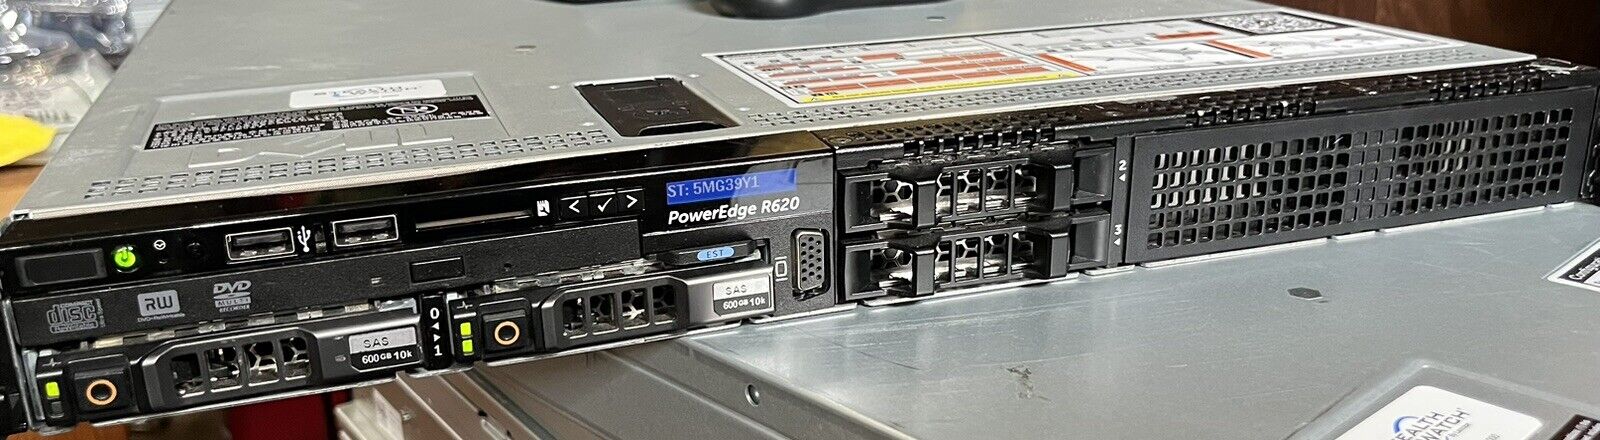 Dell PowerEdge R620 4-Bay 1U 2x E5-2650v2 2.6GHz 128GB PERC H310 2x600GB SAS